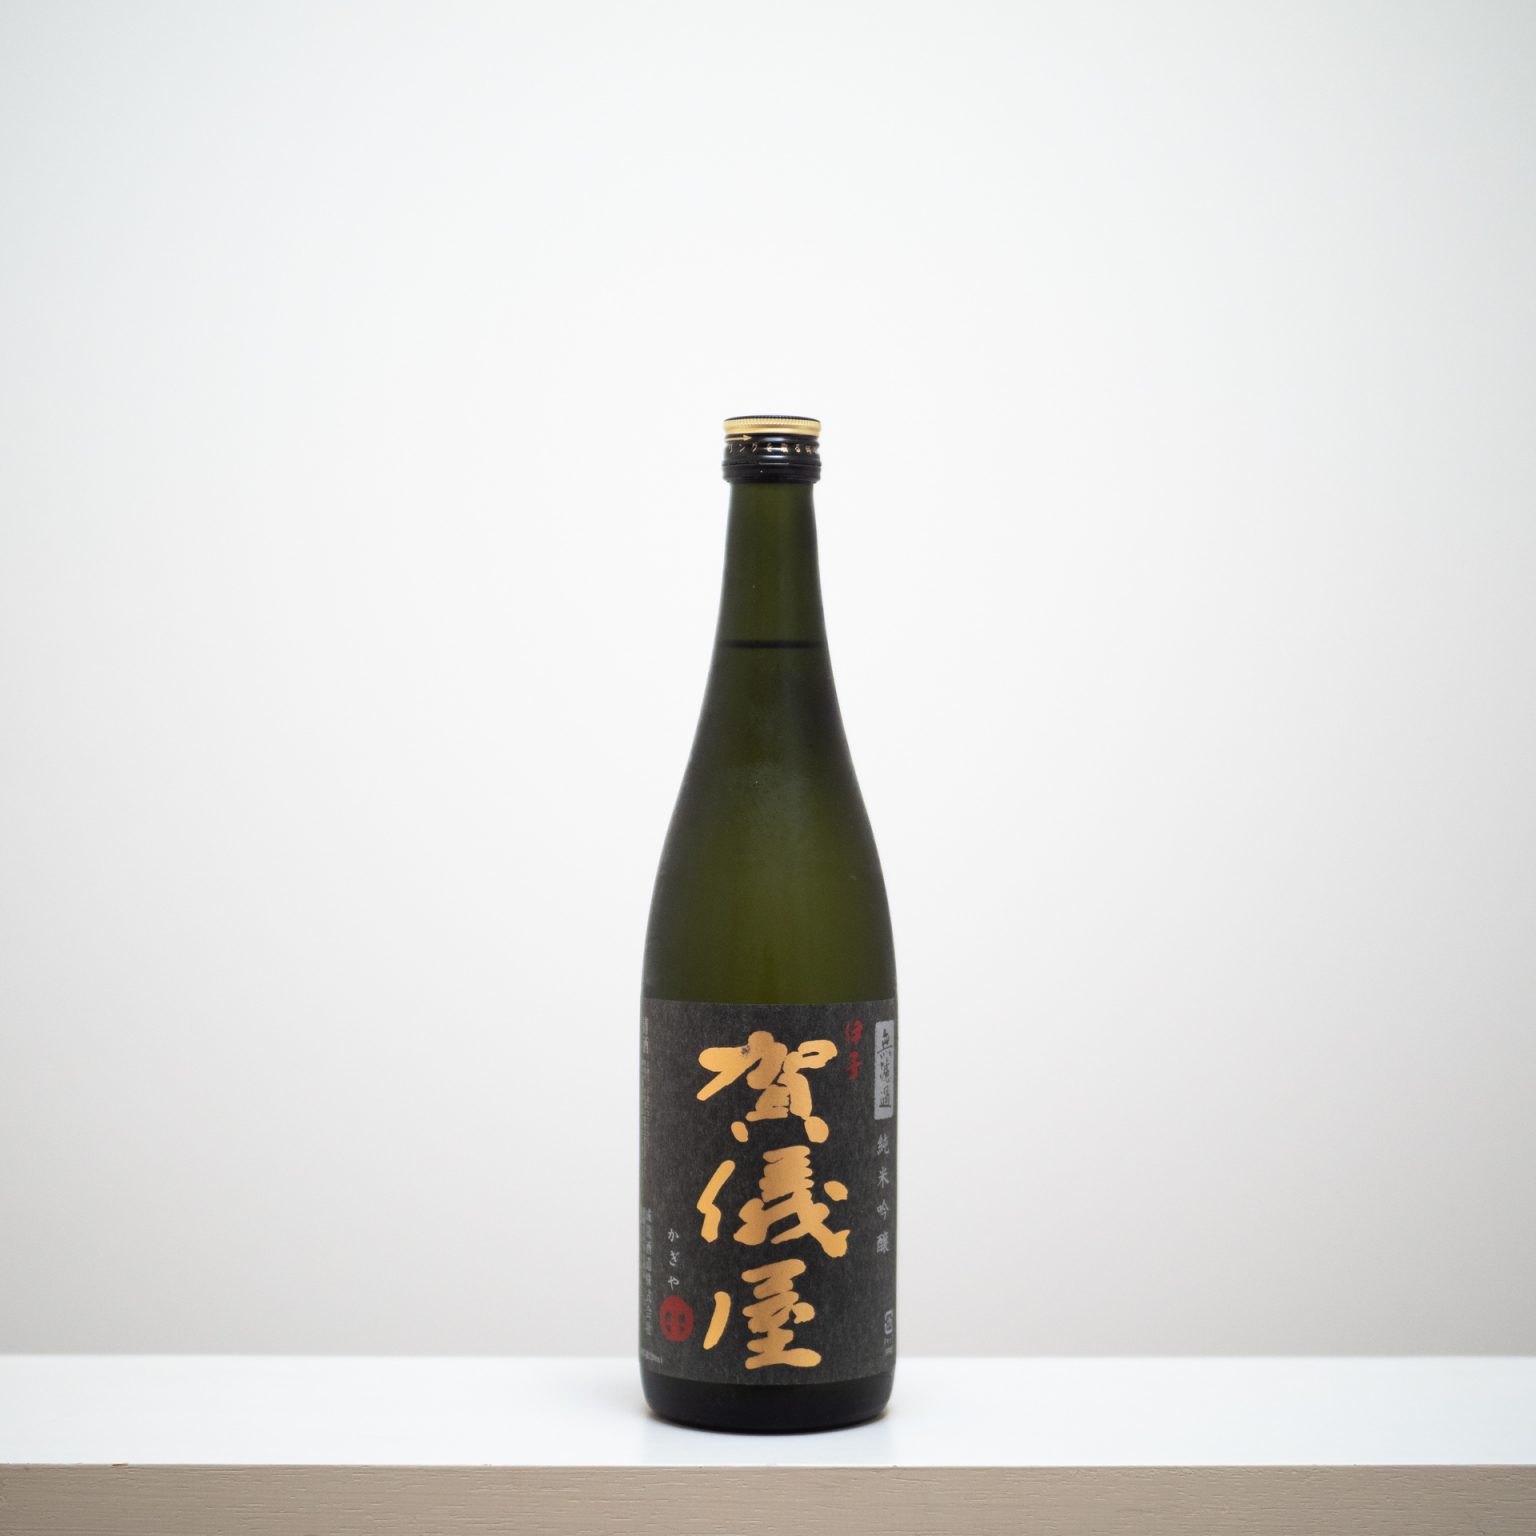 愛媛県の成龍酒造の人気銘柄「伊予賀儀屋（いよかぎや）」。“酒は料理の脇役なり”をモットーにしており、食事との相性は抜群。